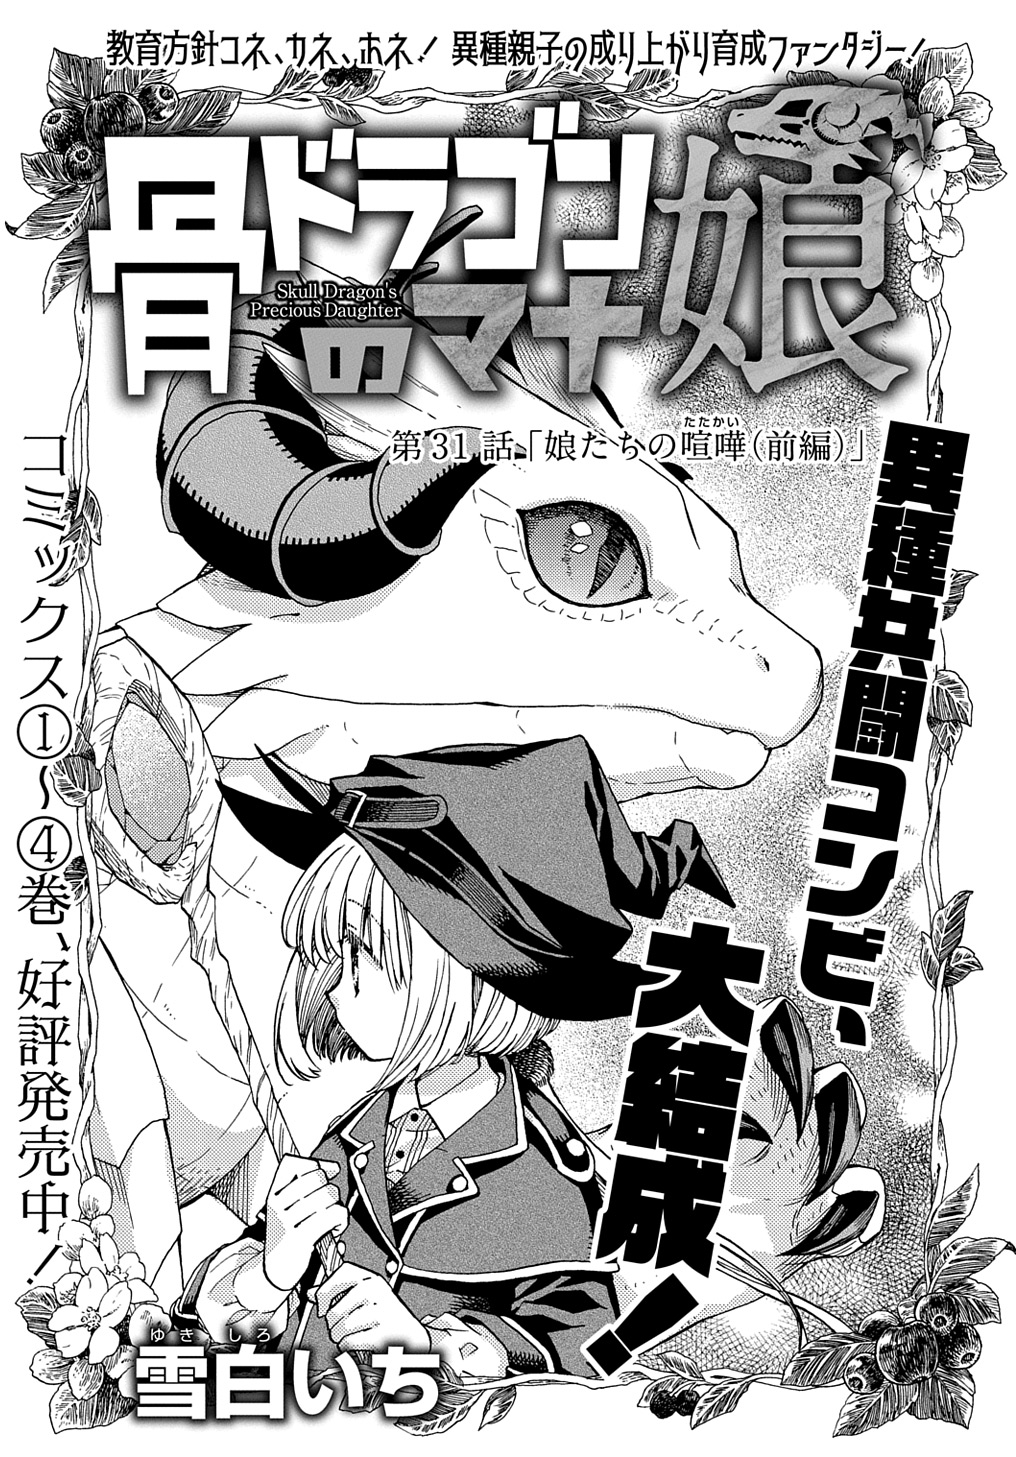 Hone Dragon no Mana Musume - Chapter 31 - Page 1